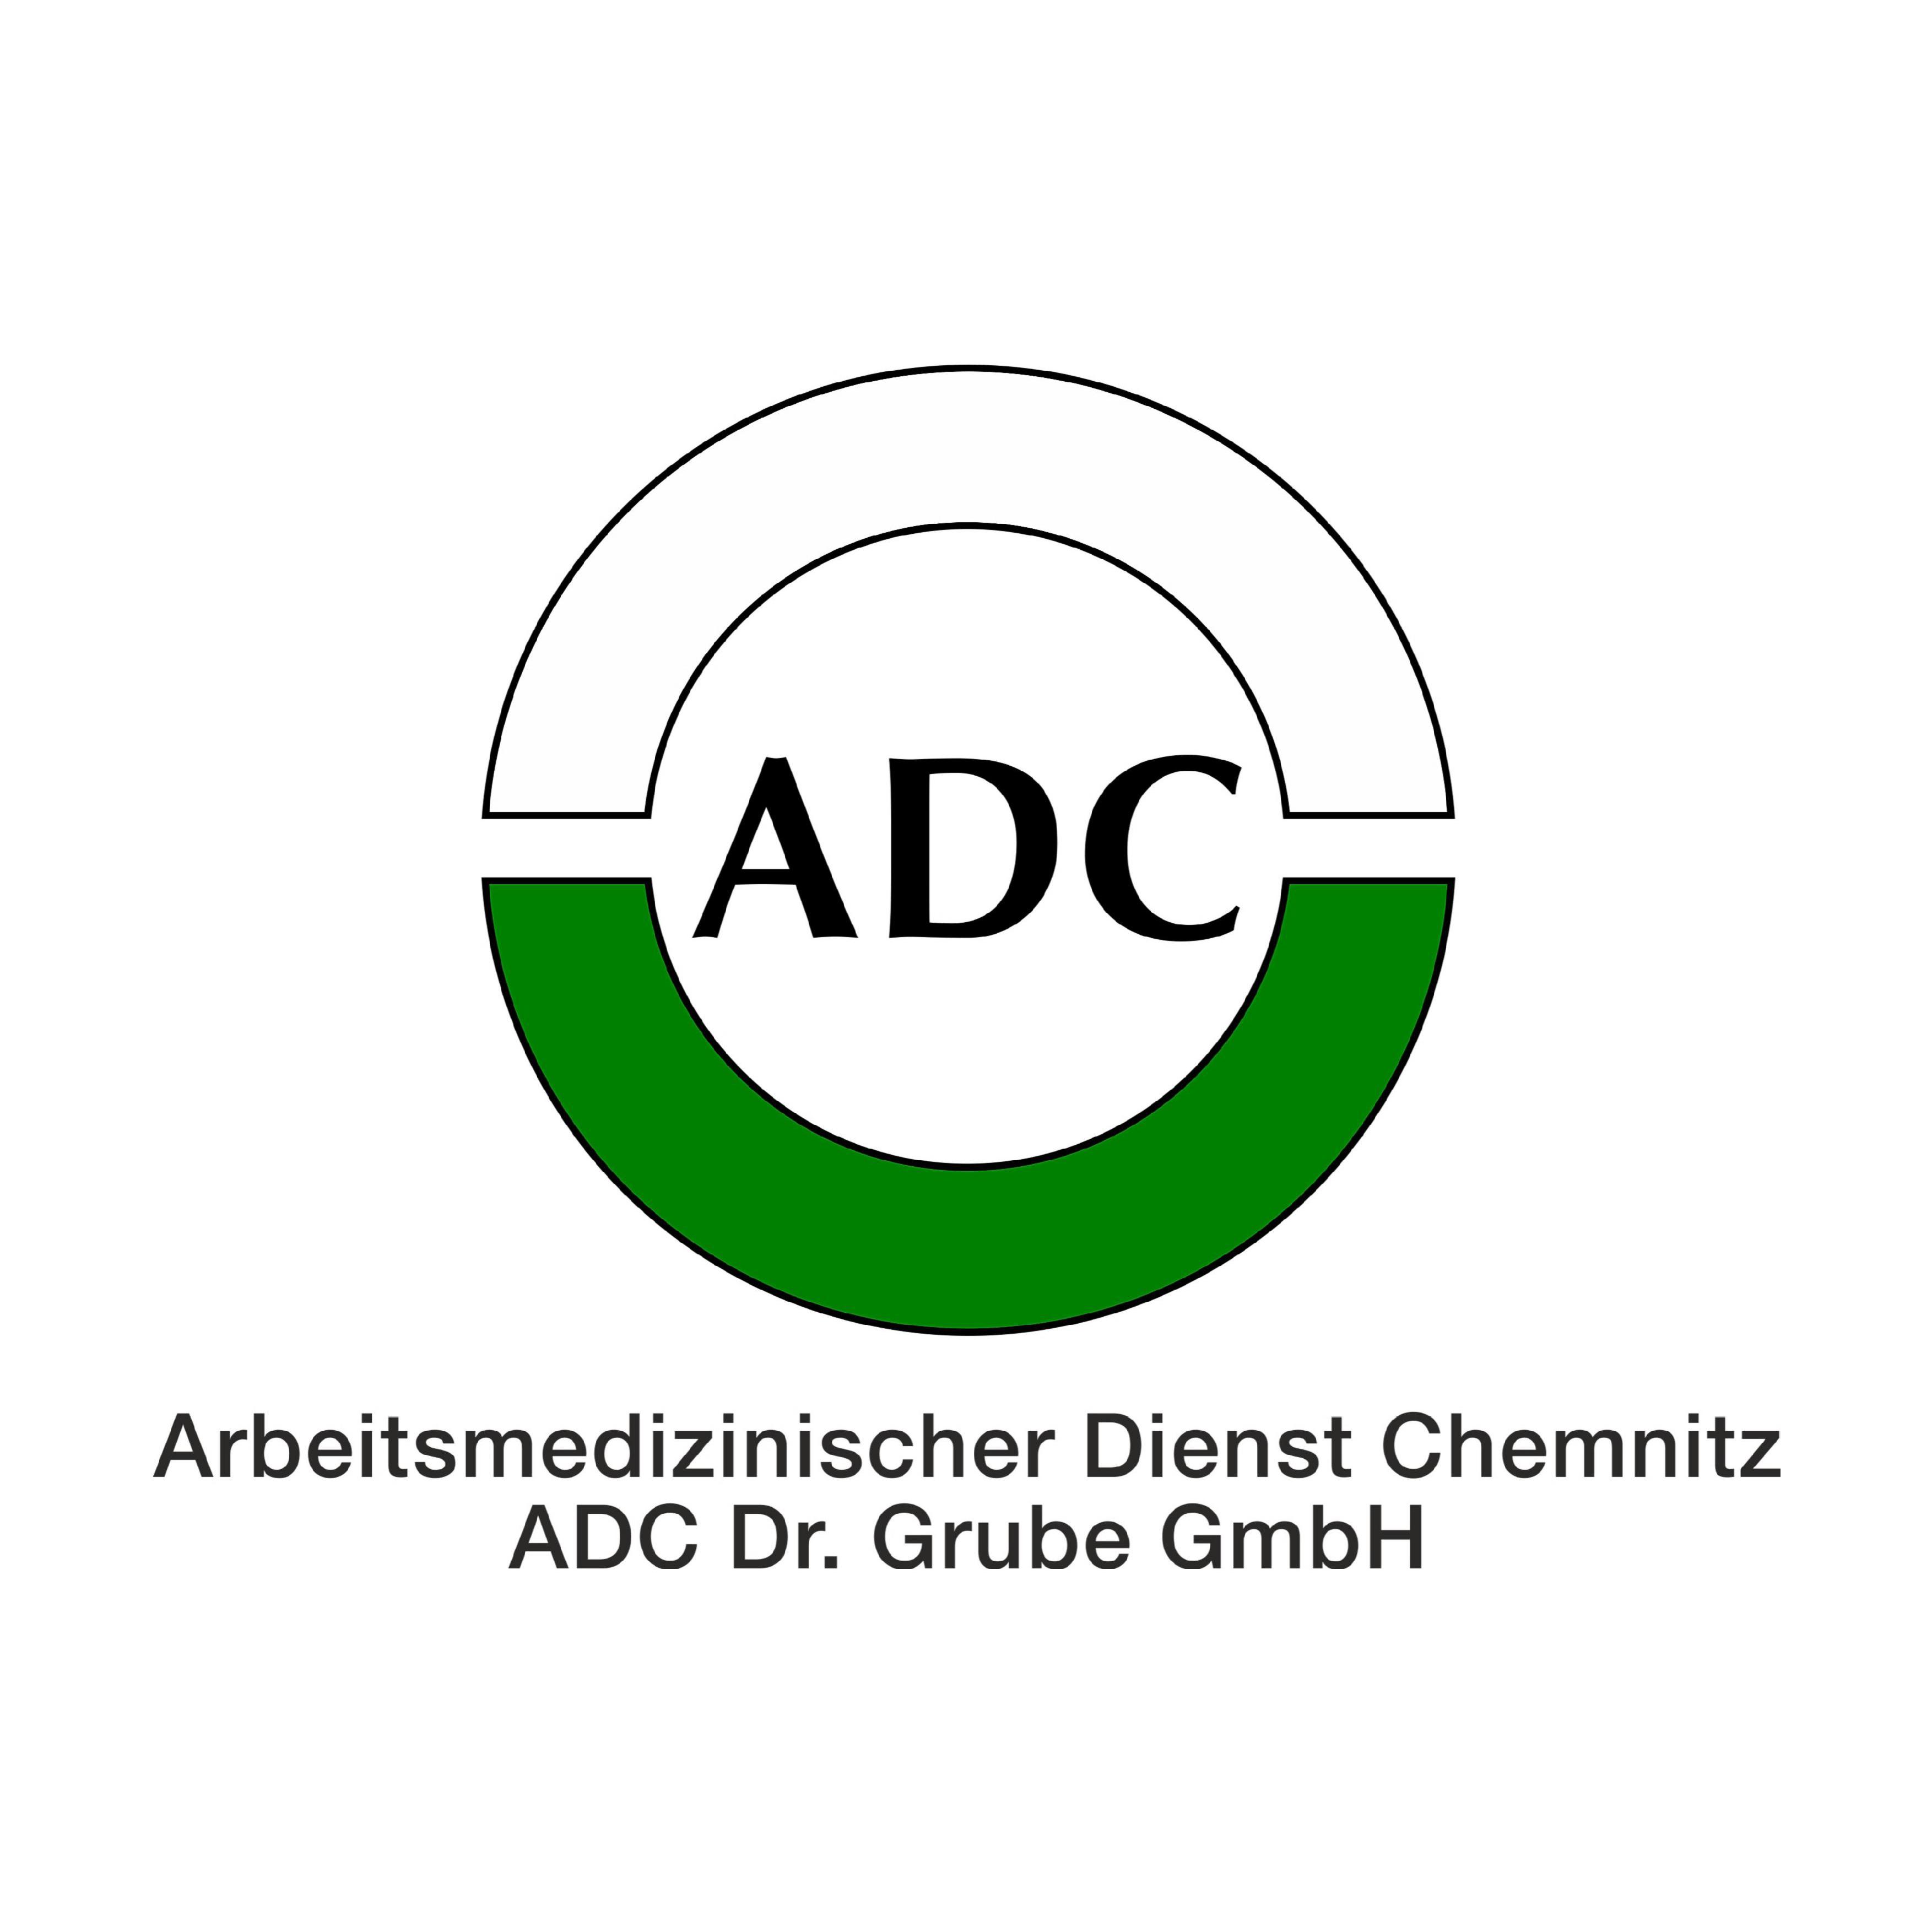 Arbeitsmedizinischer Dienst Chemnitz ADC Dr. Grube GmbH in Chemnitz